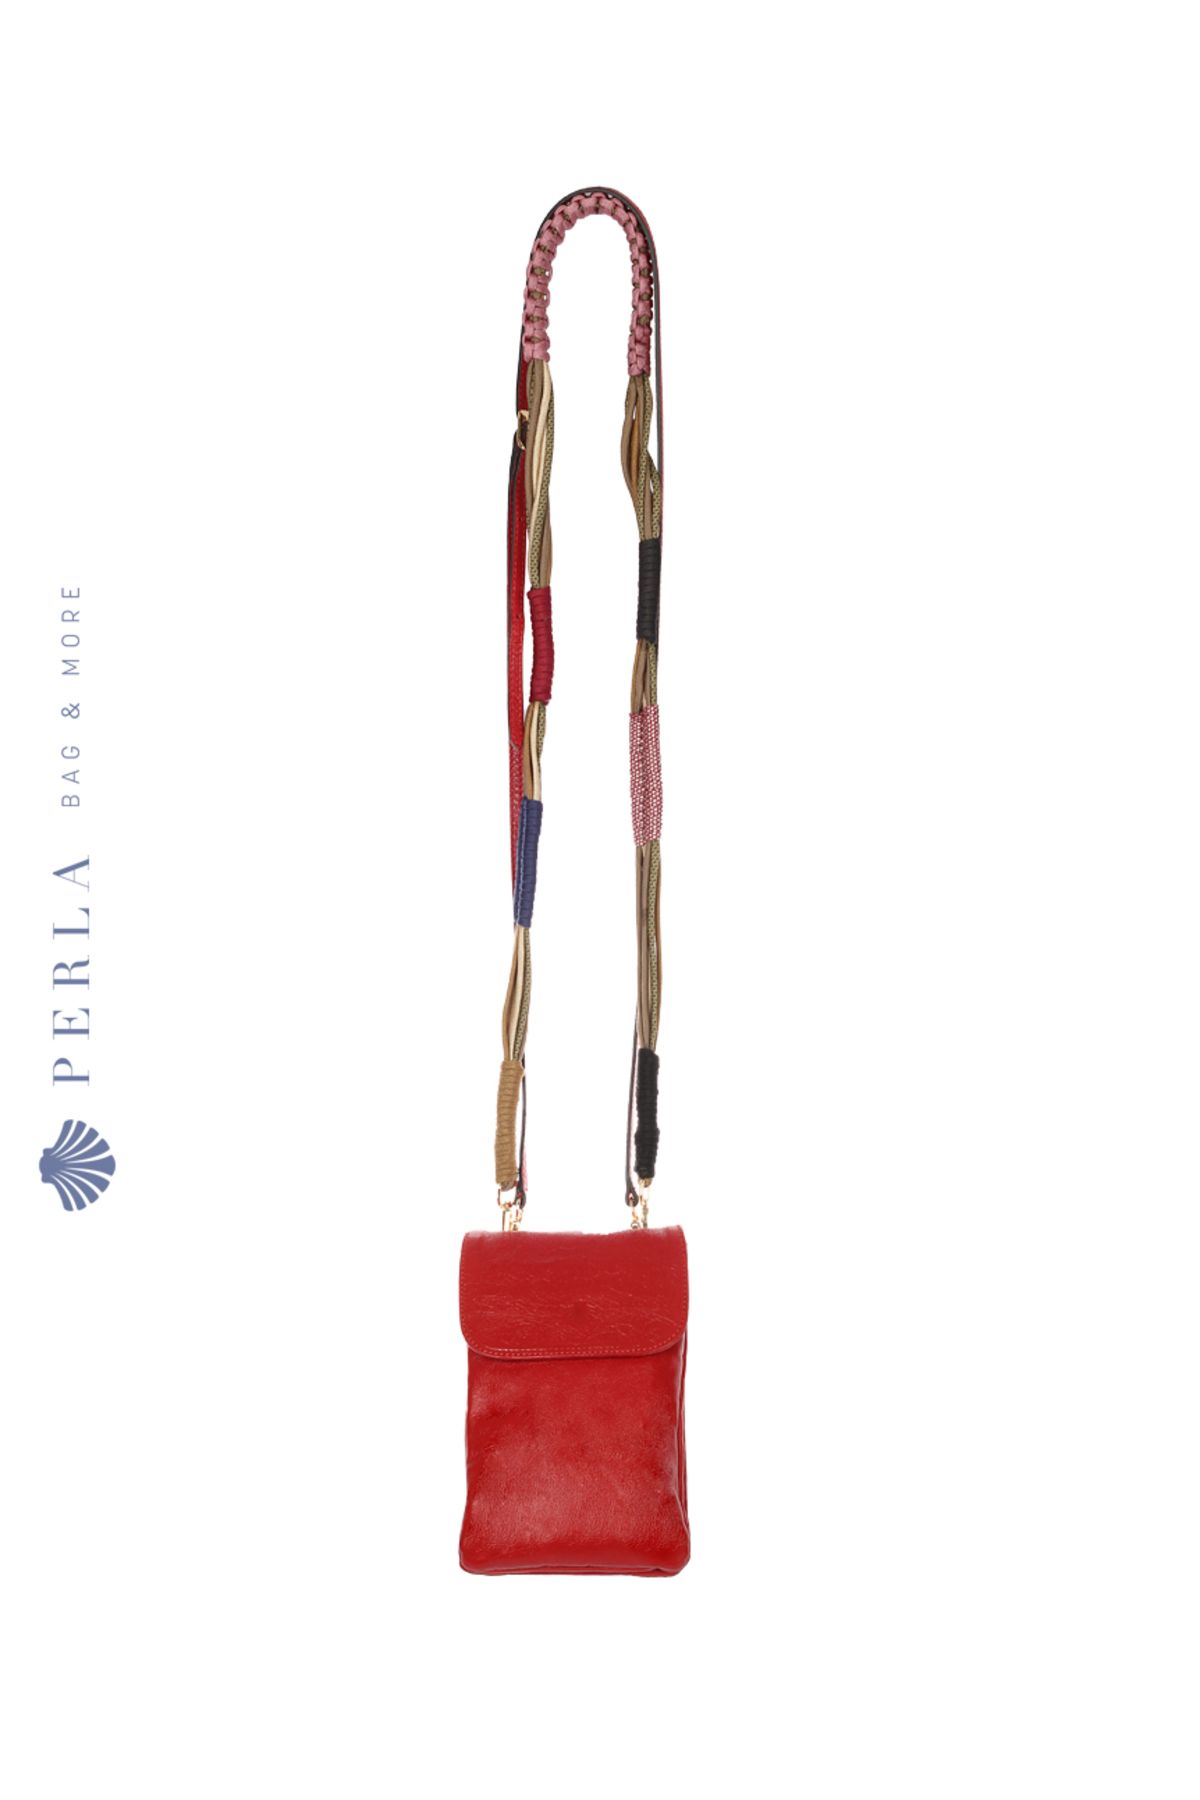 Perla Bag & More Luna Telefonluk - Kırmızı